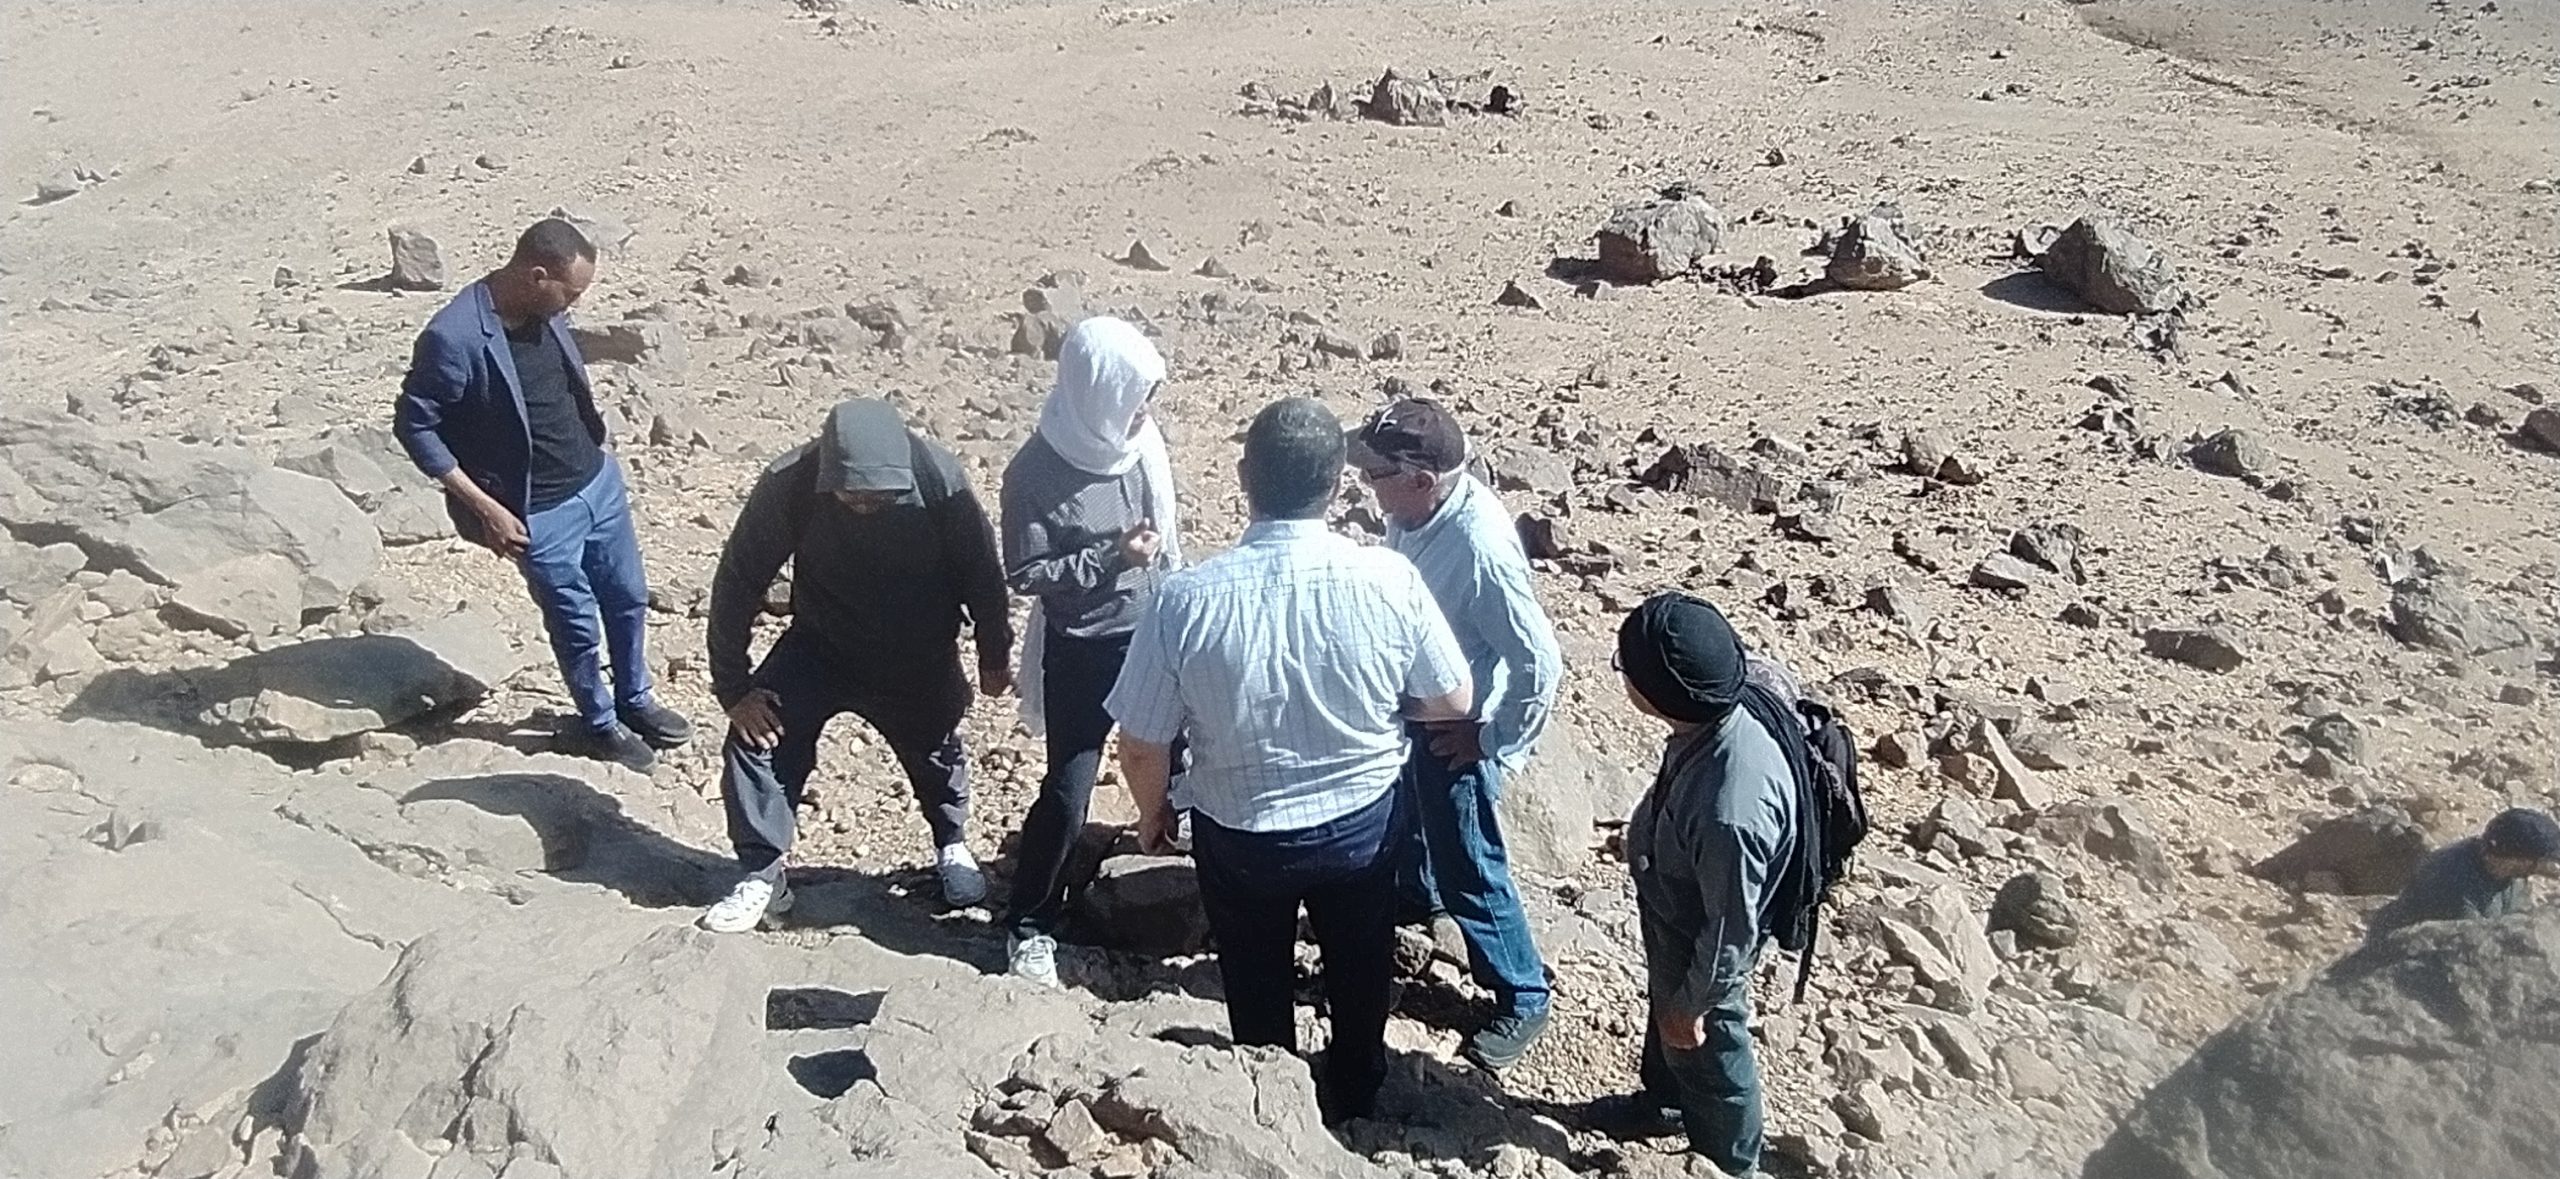 فريق استكشاف الليثيوم في الجزائر يباسر عمله